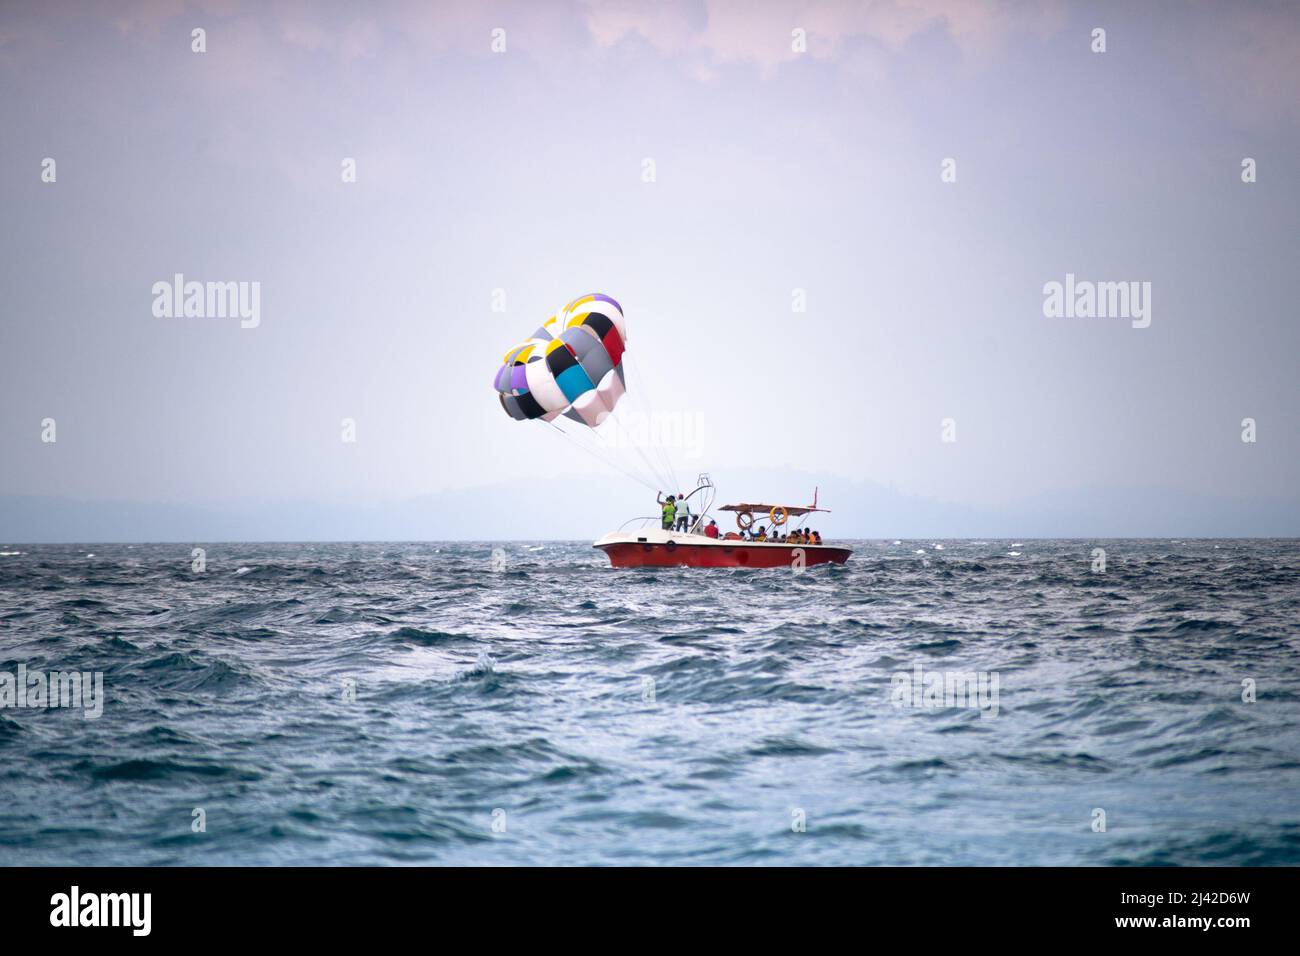 Parachute ascensionnel naviguant derrière un bateau à grande vitesse flottant sur un ciel nuageux à la plage de havelock andaman nicobar Island Inde montrant des sports d'aventure Banque D'Images